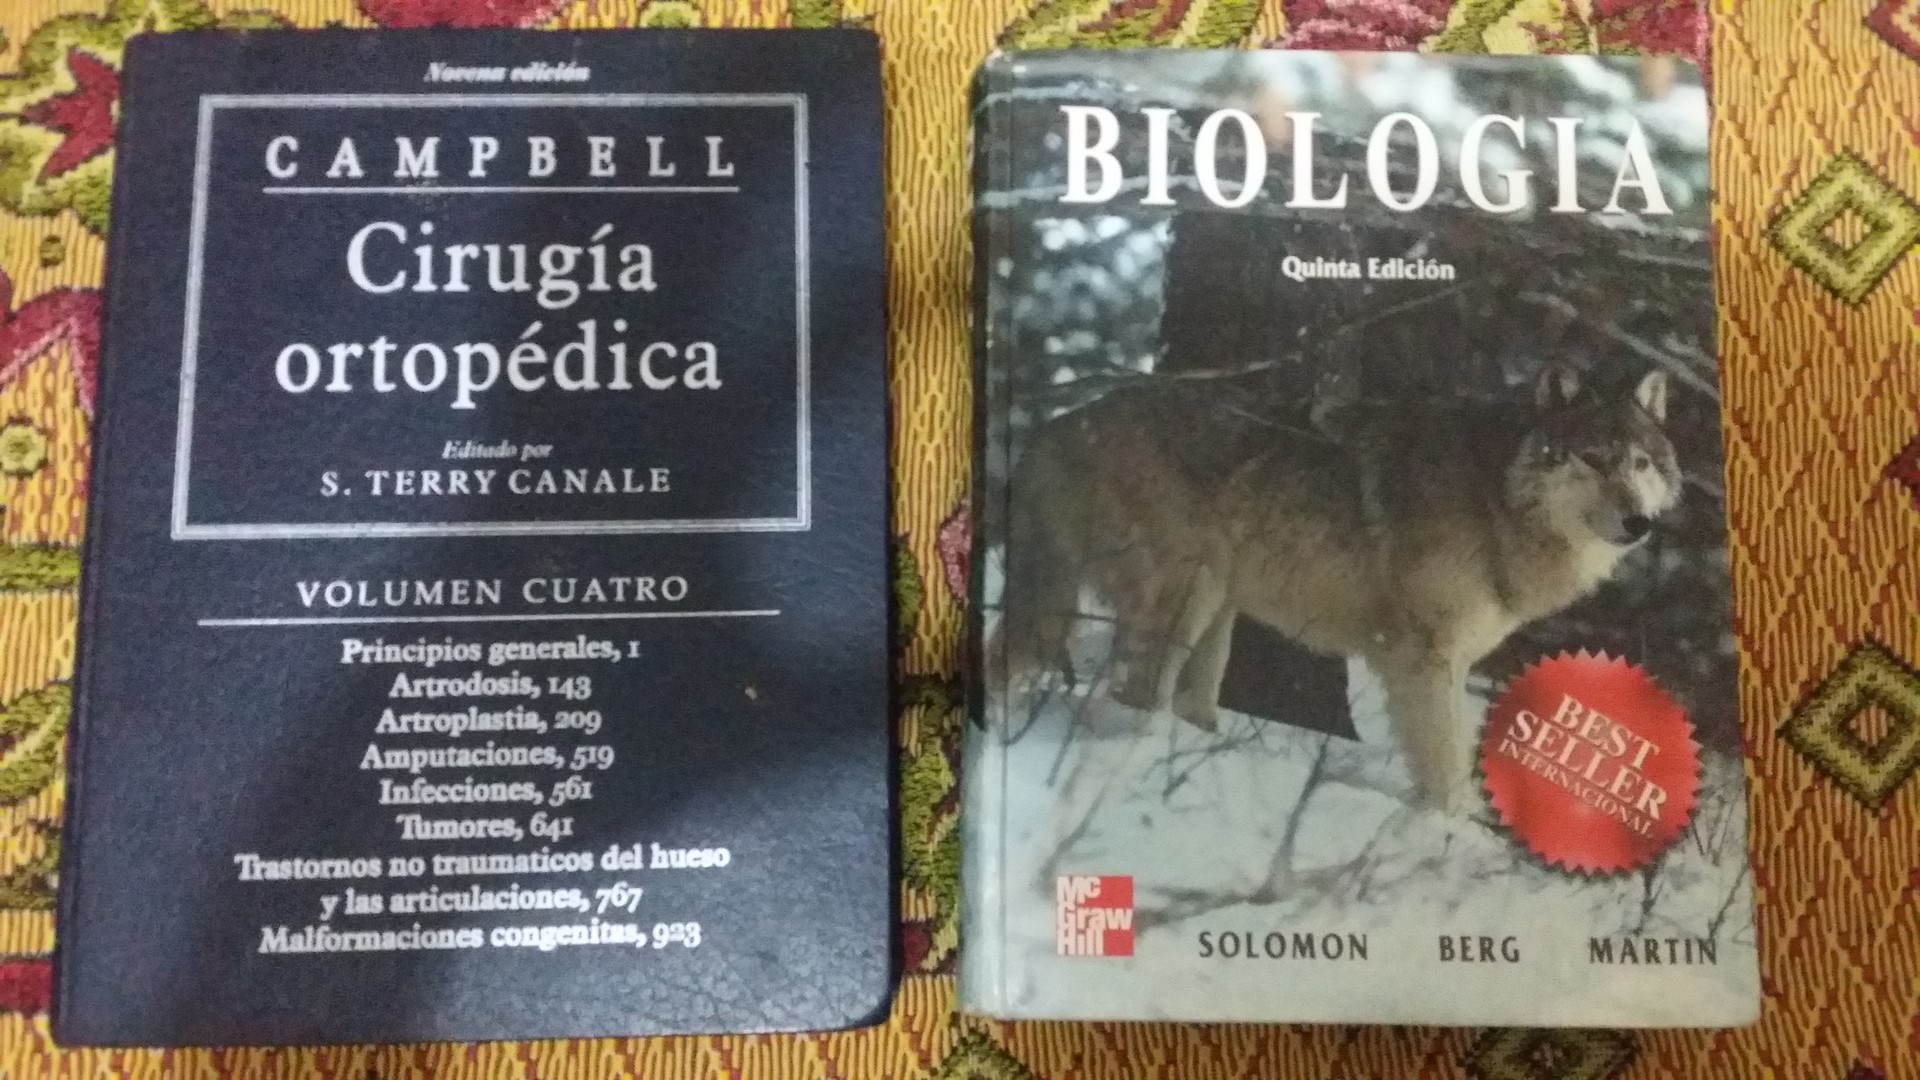 libros y revistas - Libros Biología quinta Edición Campell Cirugía Ortopédica